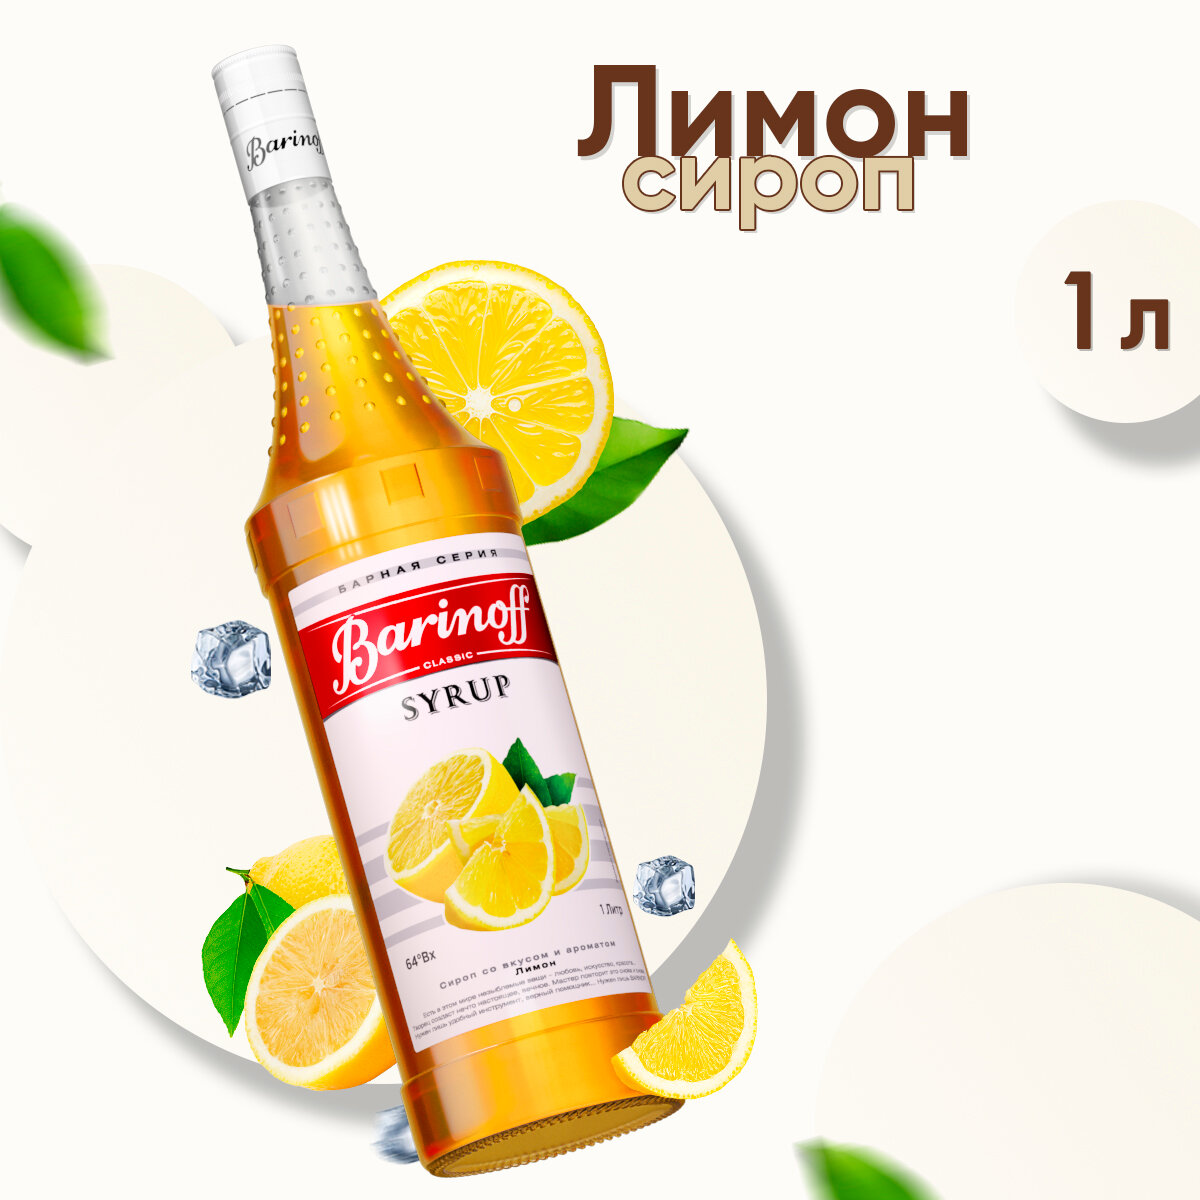 Сироп Barinoff Лимон (для кофе, коктейлей, десертов, лимонада и мороженого), 1л